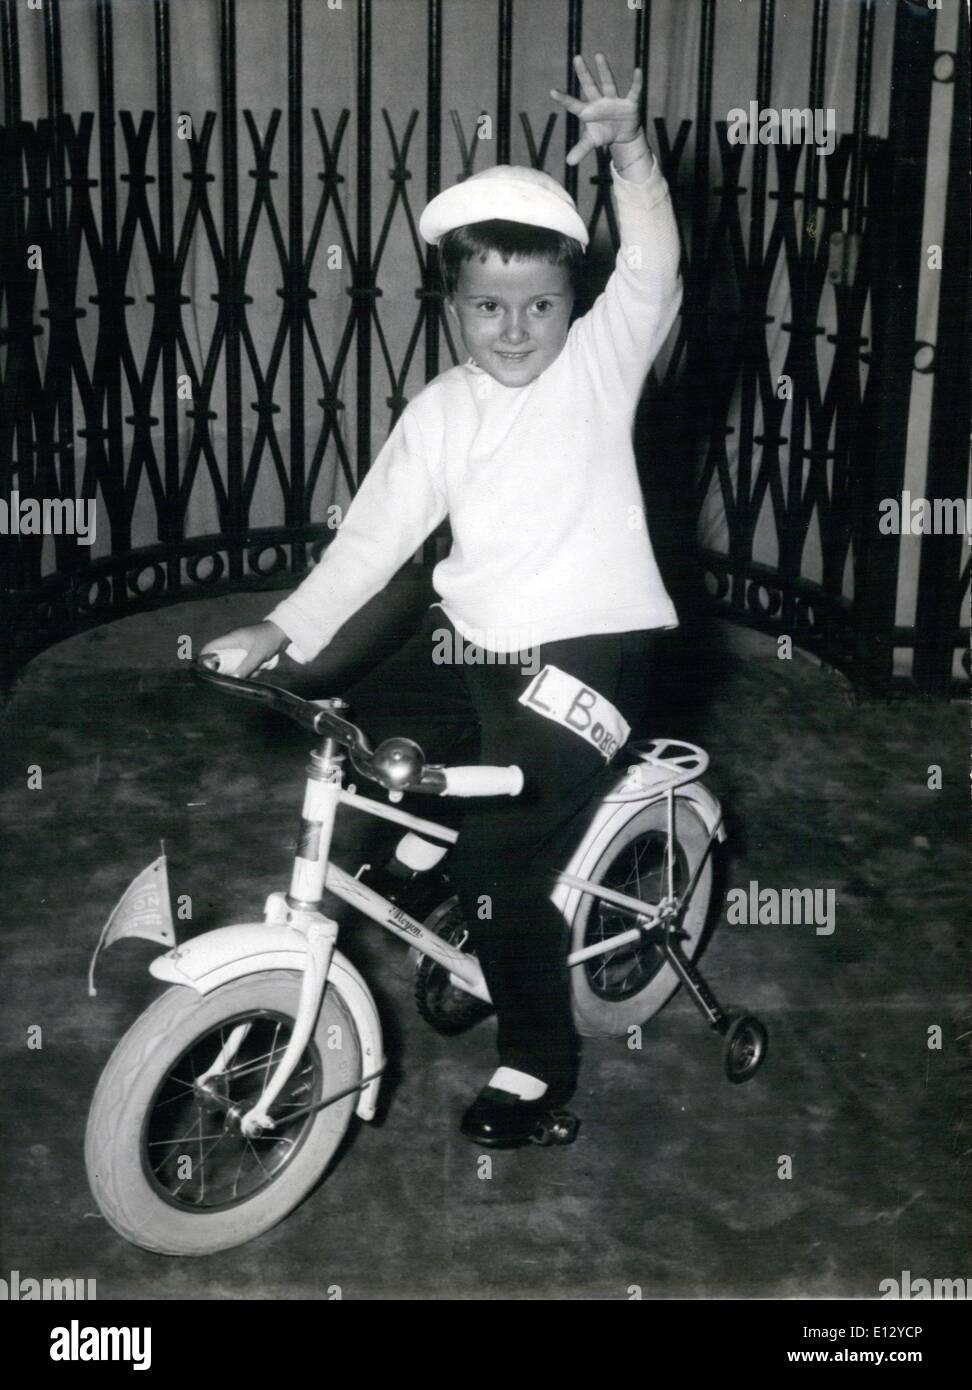 26. Februar 2012 - inspiriert Tour de France Mode. Sportliches Outfit für kleine Jungs von Virginie, für ihre Herbst / Winter-Kollektion entworfen. Es ist berechtigt Louis Bobet, nach dem Namen des populären französischen Radsport Racer, der wahrscheinlichen Sieger der Tour de France 1955. Stockfoto